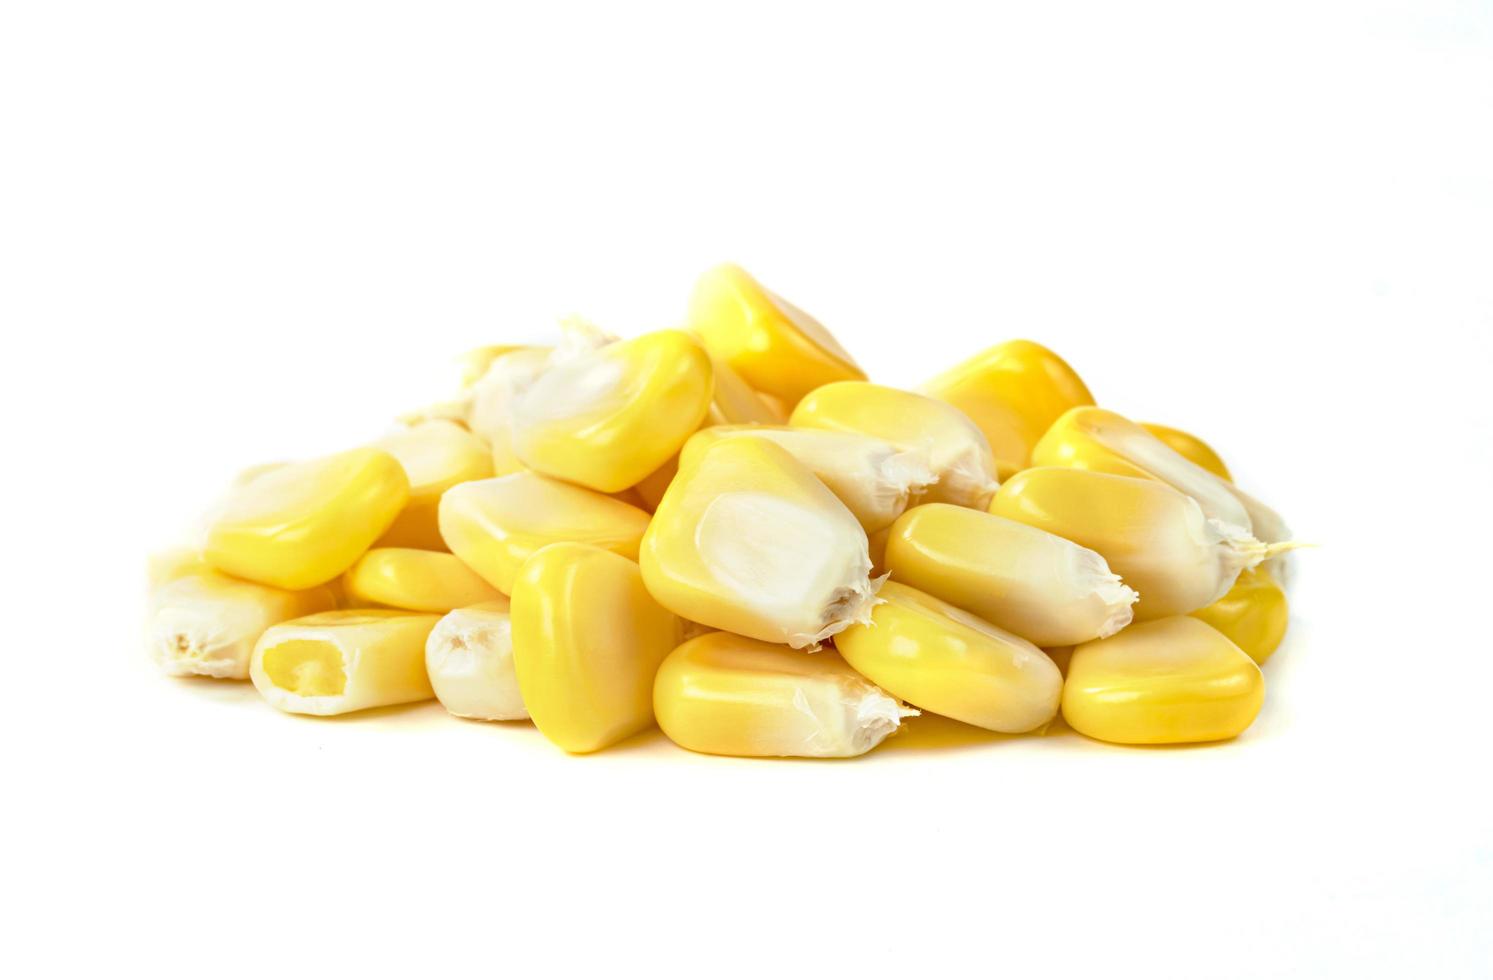 Corn kernels isolated on white background photo